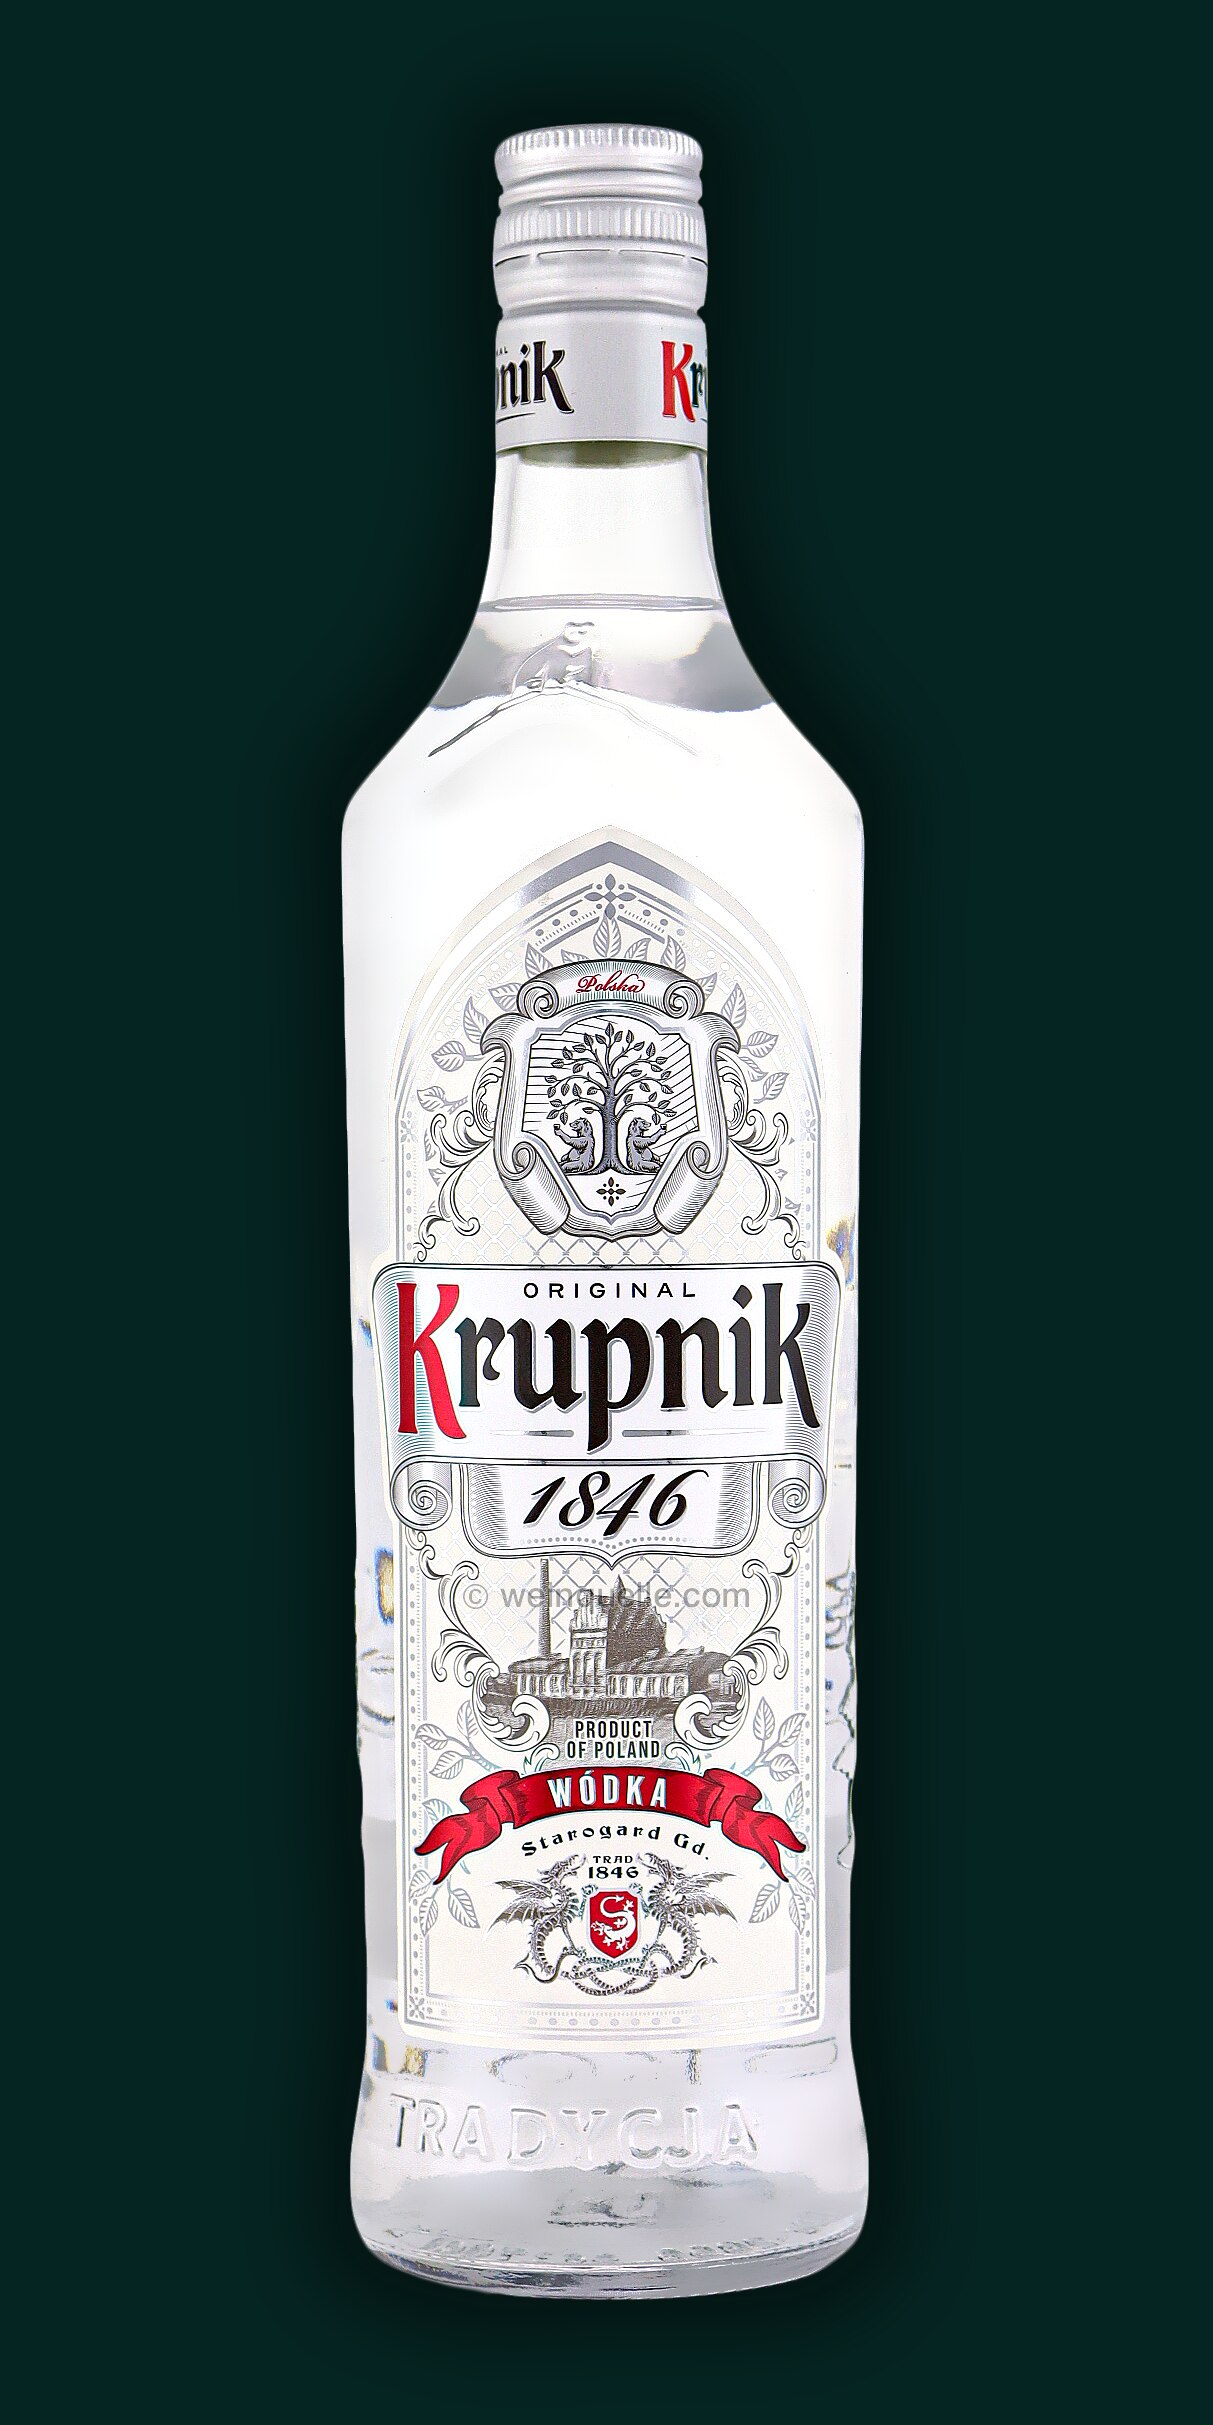 Vodka, 11,95 - 40% Premium € Lühmann Krupnik Weinquelle